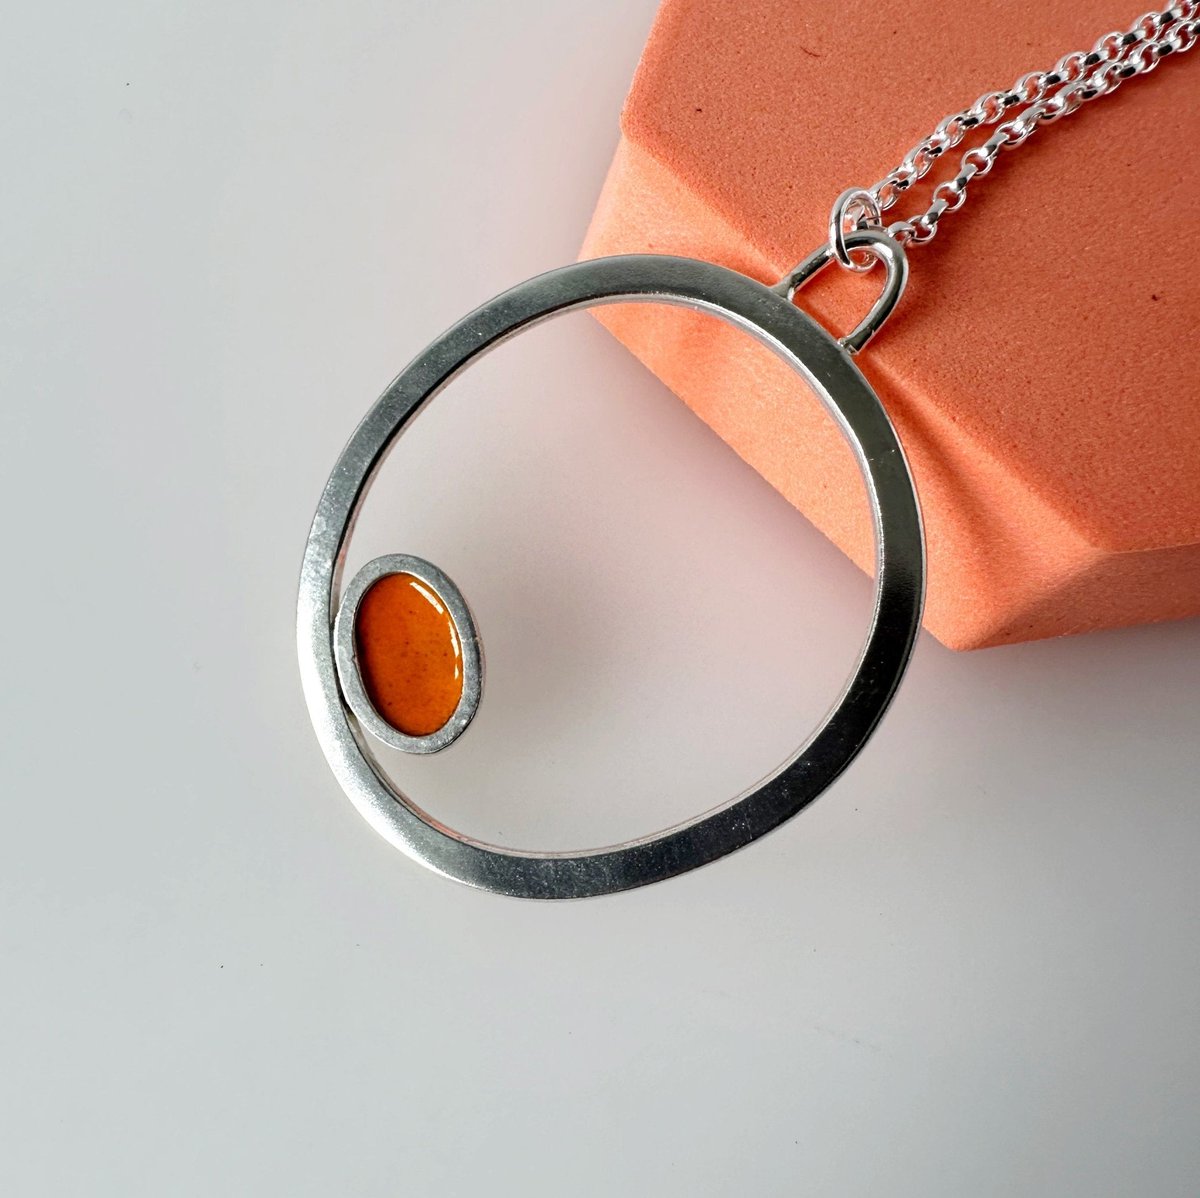 Silver Circle Pendant with Enamelled Oval in Orange tuppu.net/8dba804b #UKHashtags #inbizhour #giftideas ##UKGiftHour #shopsmall #MHHSBD #bizbubble #HandmadeHour #Orange